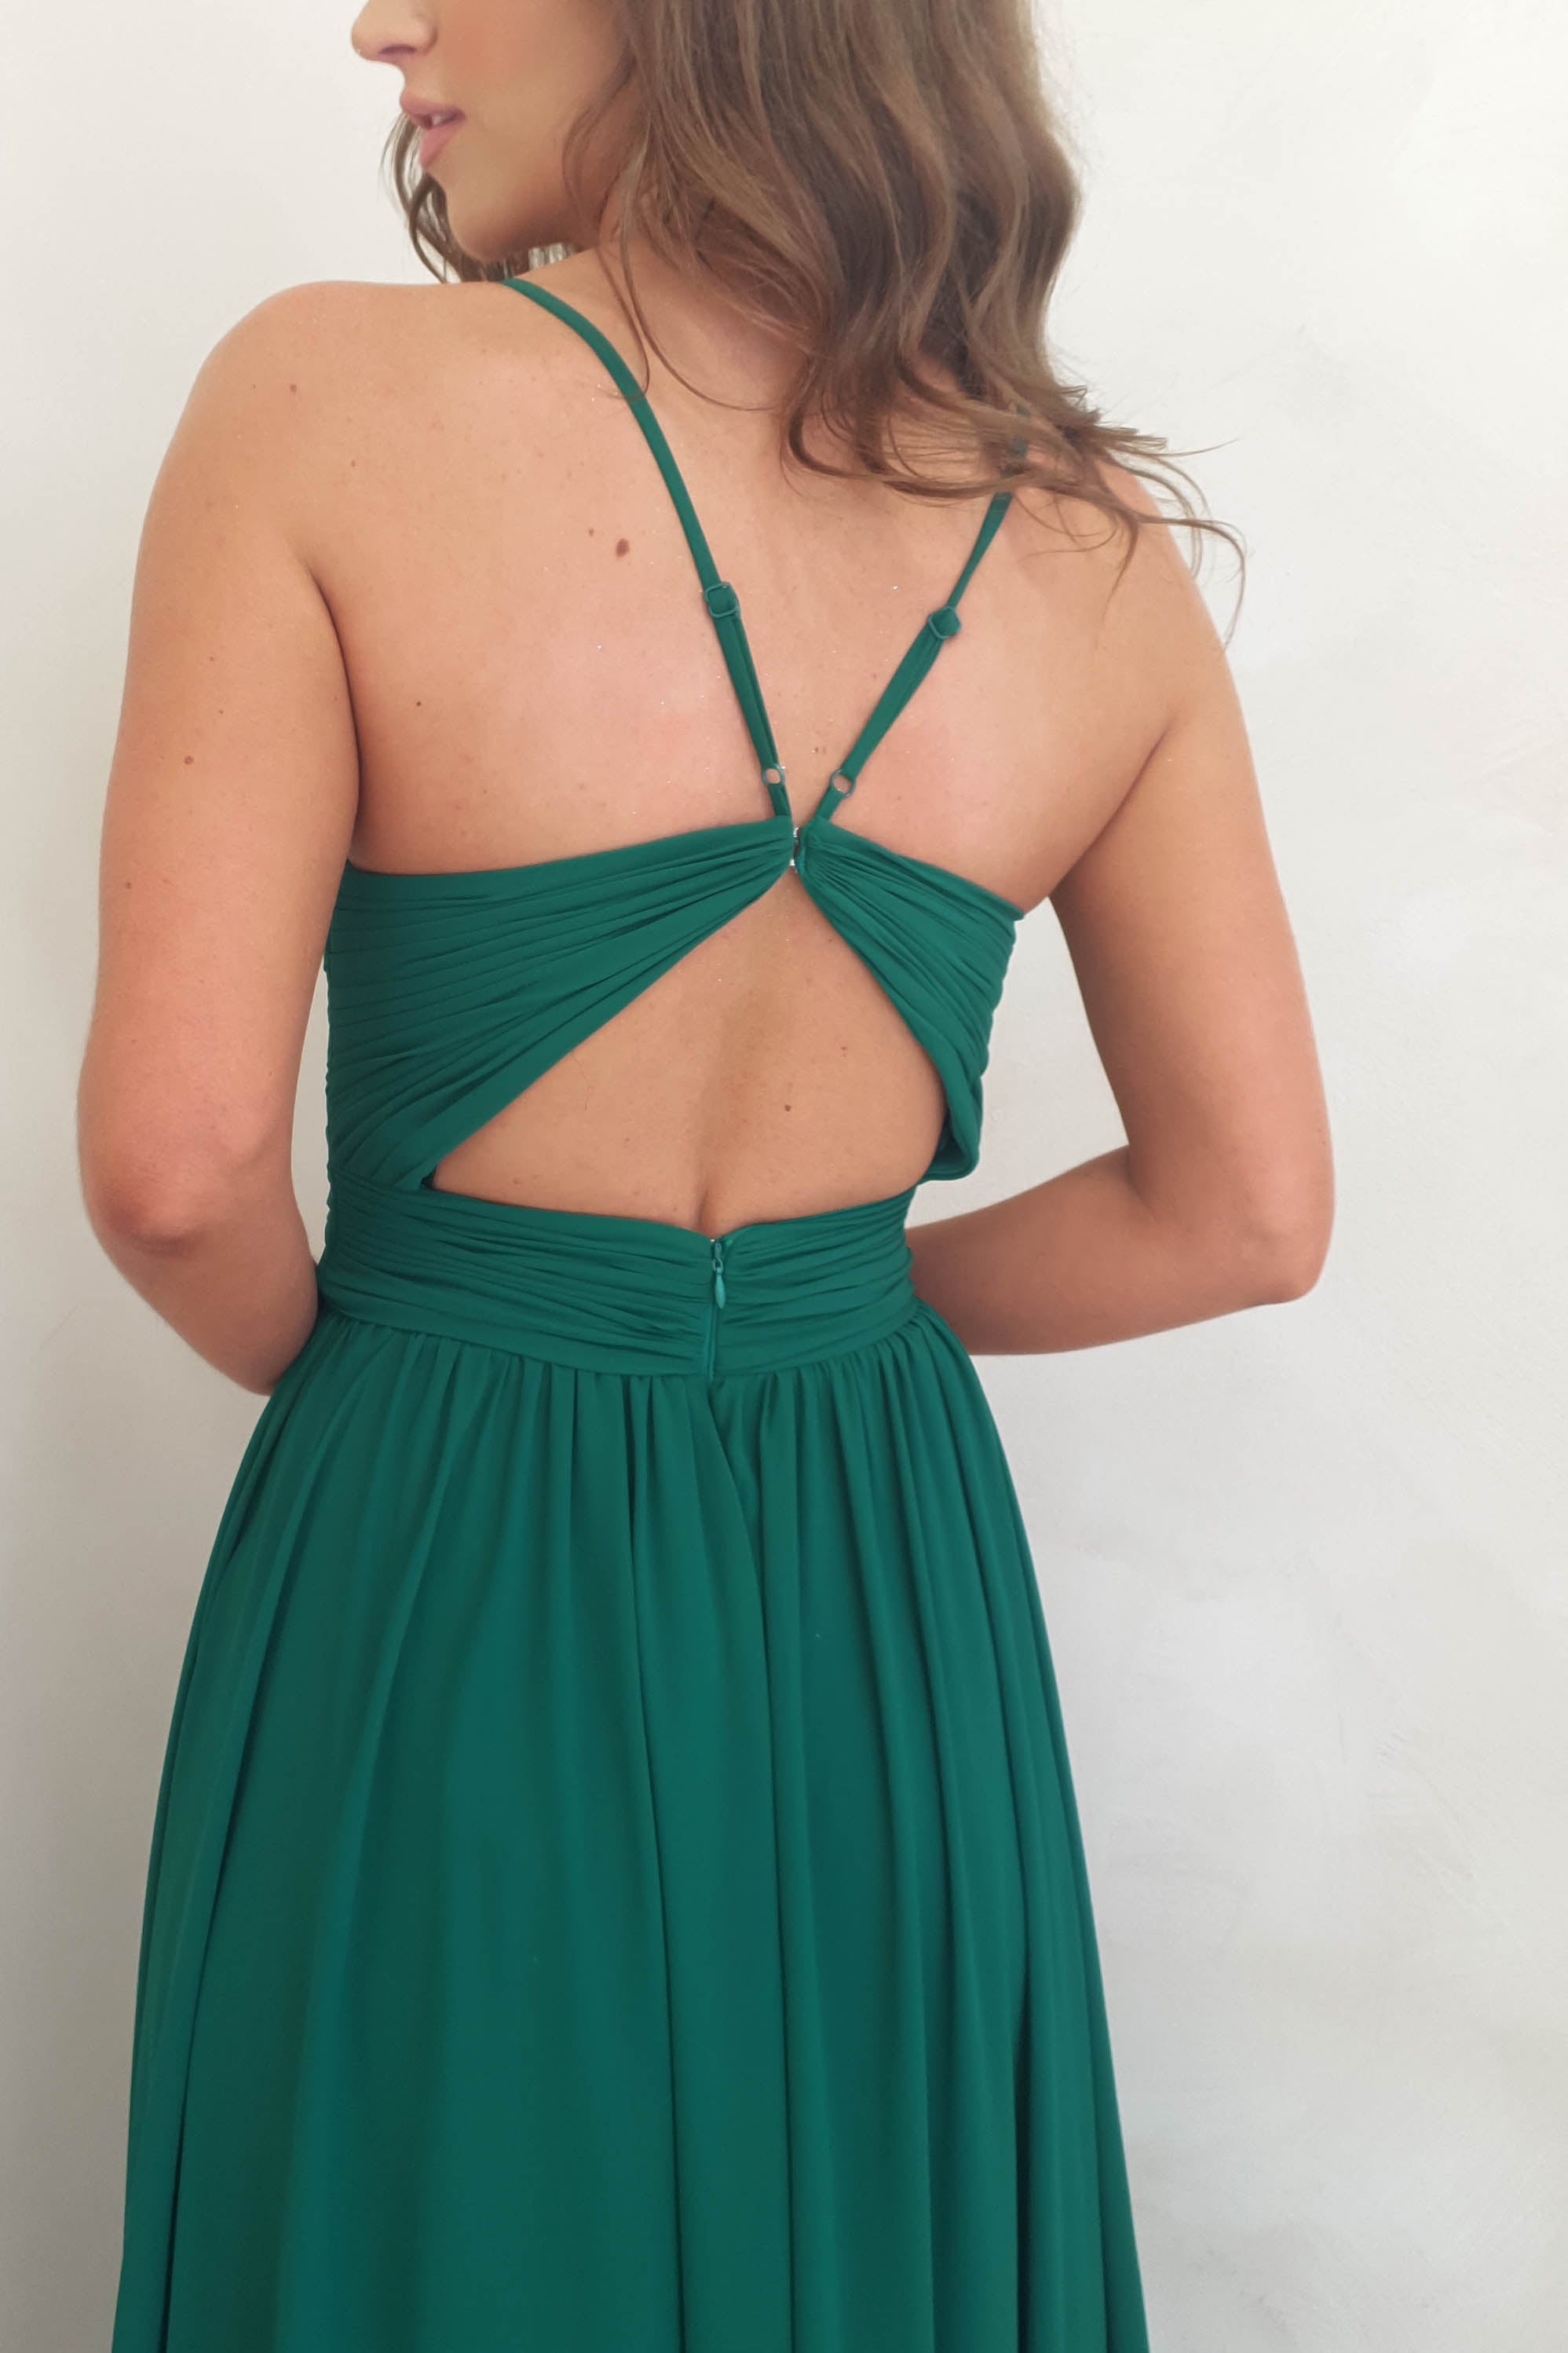 Jedwabna suknia Rosie | Zielony las